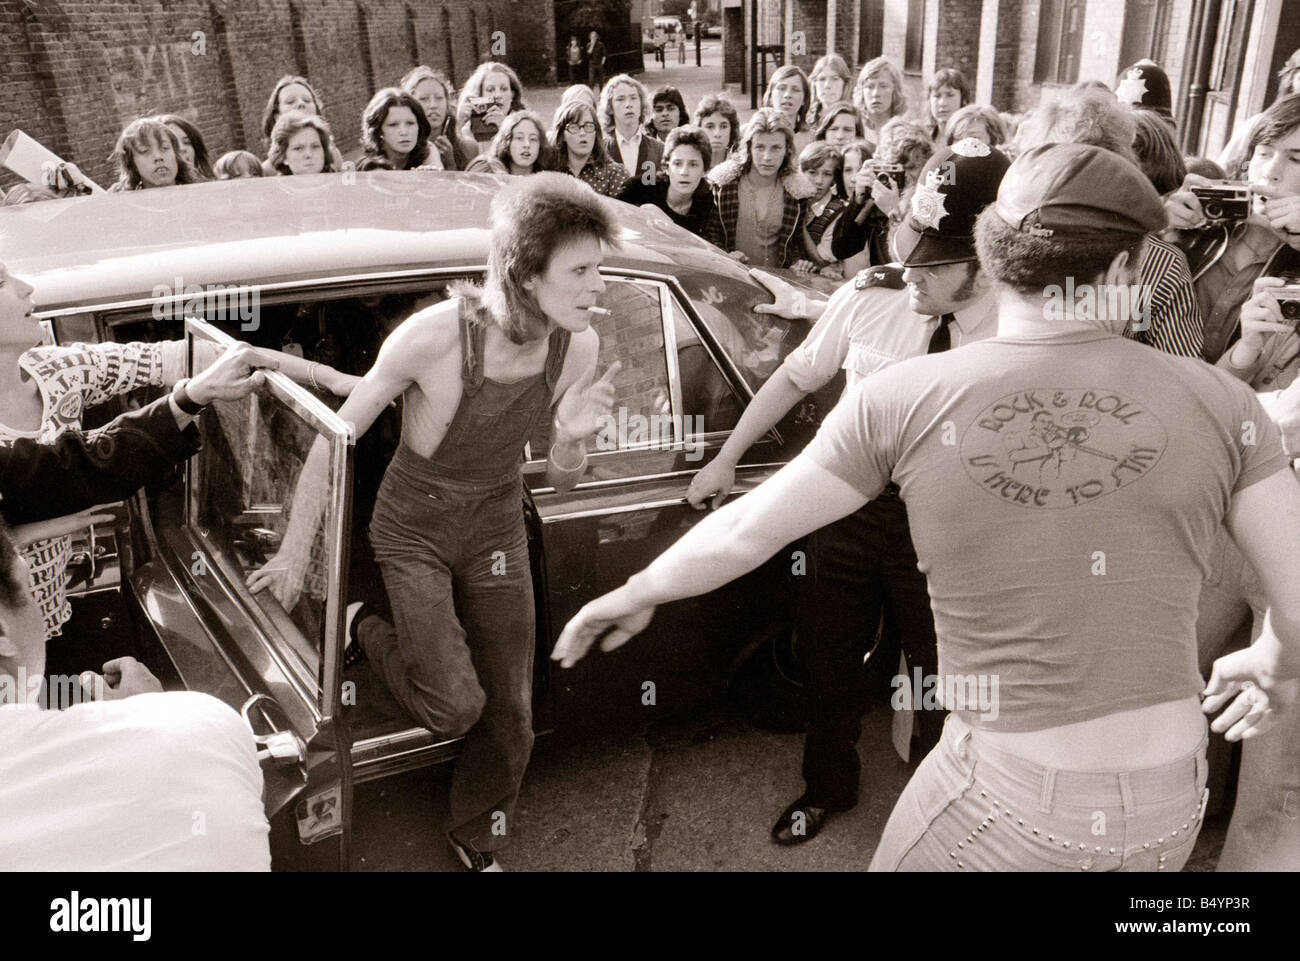 David Bowie Singer Juillet 1973 arrivant à l'odéon 75015 gqmagazineusa gqmagazineusa Banque D'Images